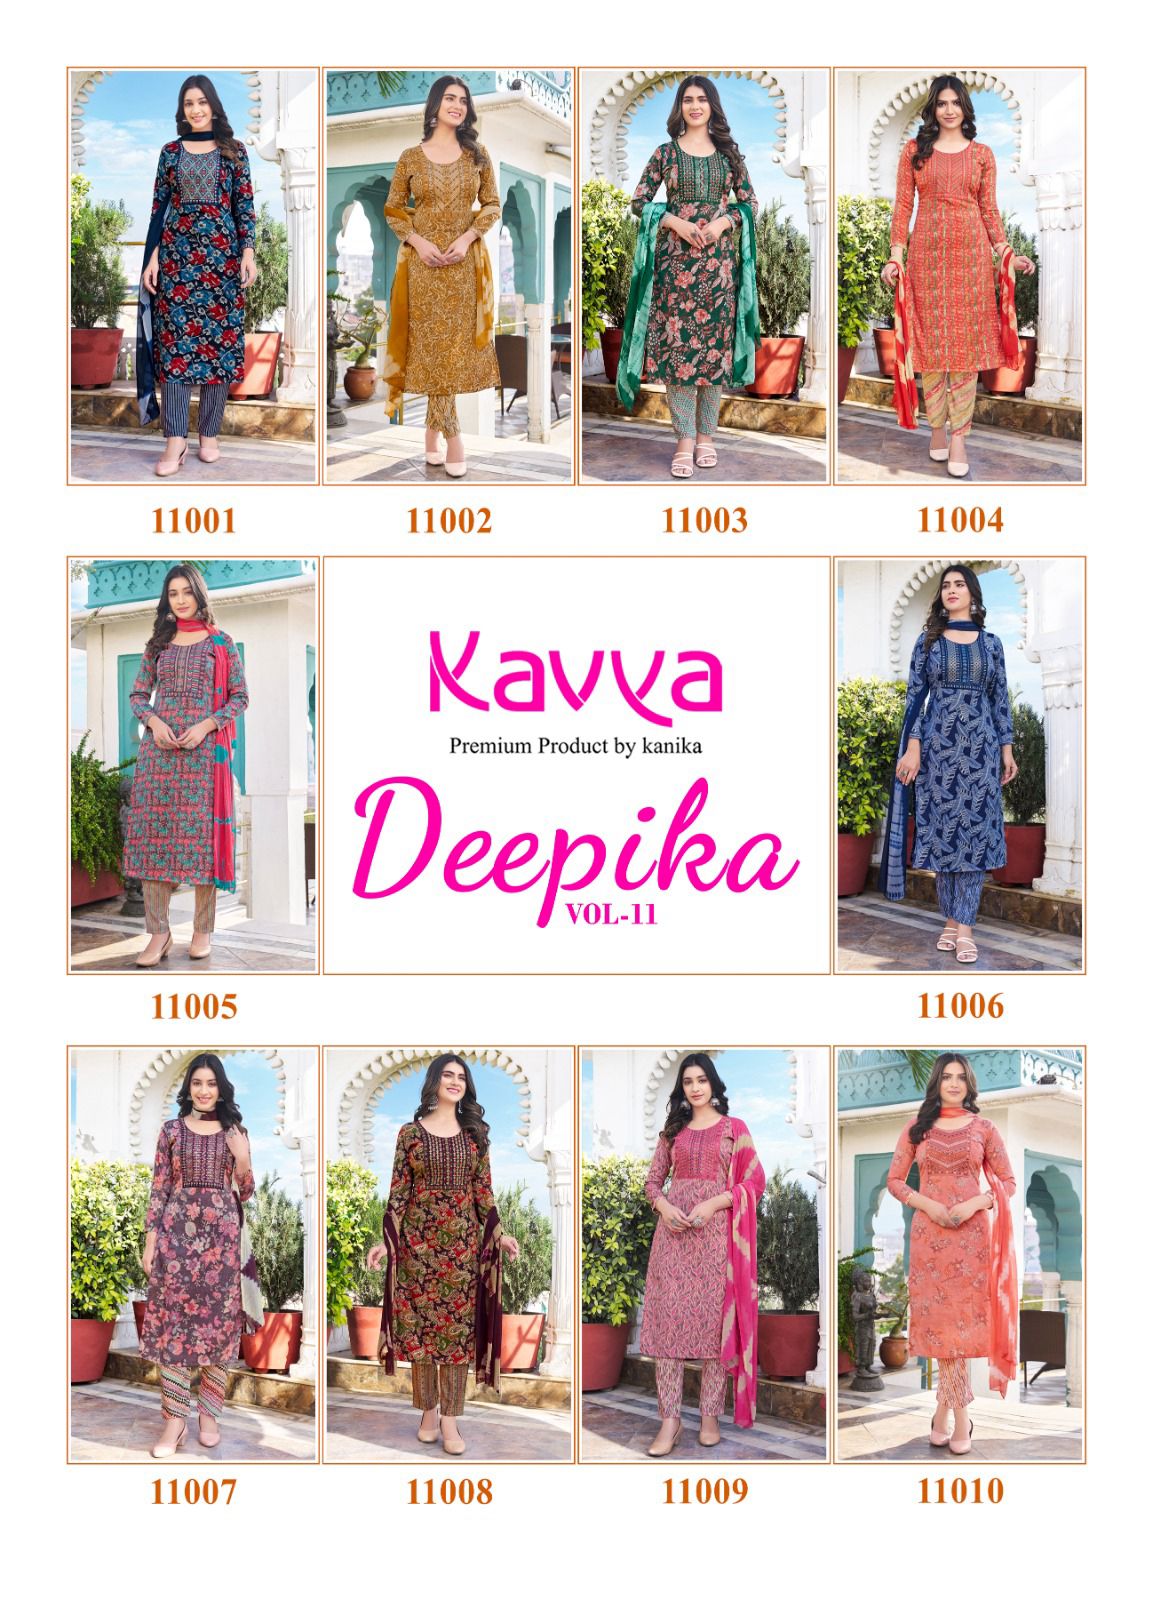 Kavya Deepika Vol 11 collection 4